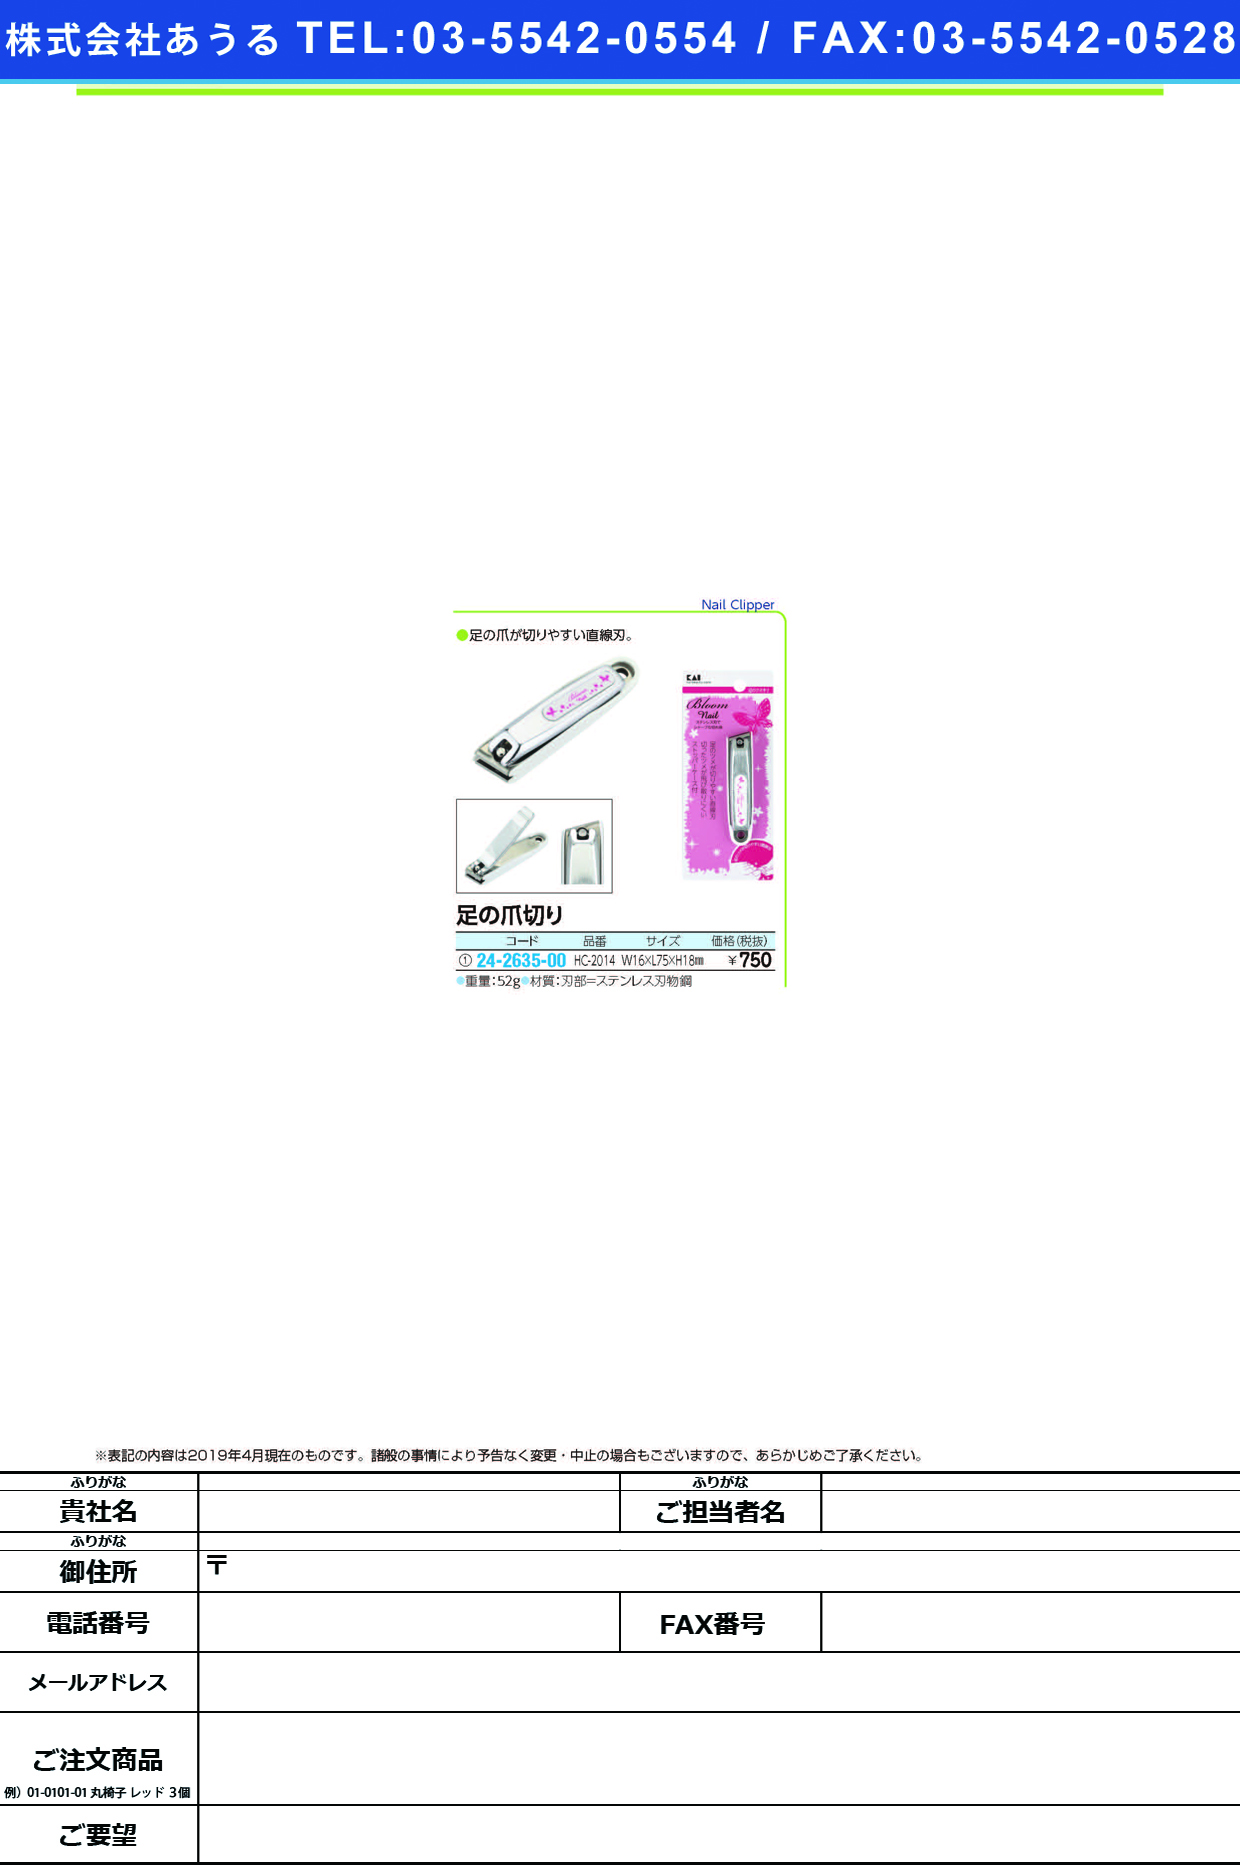 (24-2635-00)ブルームネイル足の爪切り HC-2014 ﾌﾞﾙｰﾑﾈｲﾙｱｼﾉﾂﾒｷﾘ(貝印)【1個単位】【2019年カタログ商品】